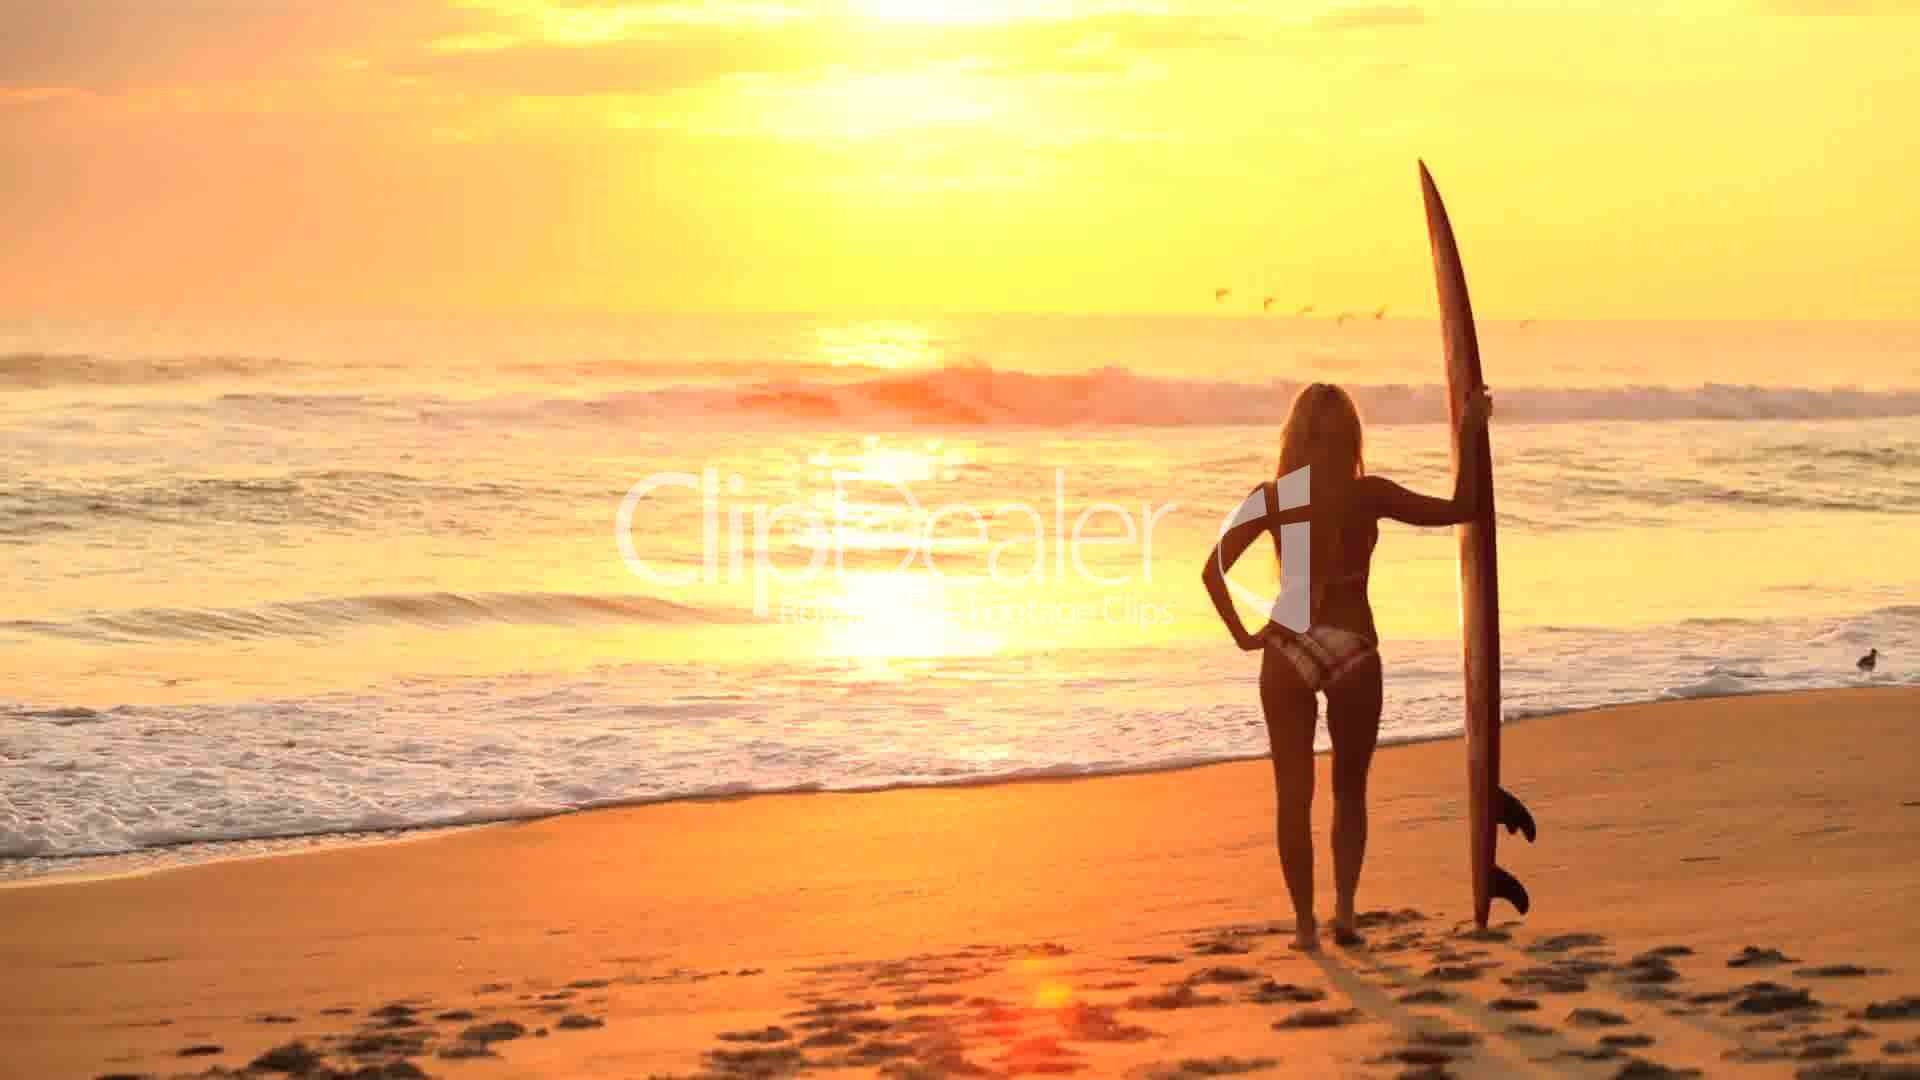 13–934789-Surfer Girl at Sunrise.jpg (1920Ã1080)